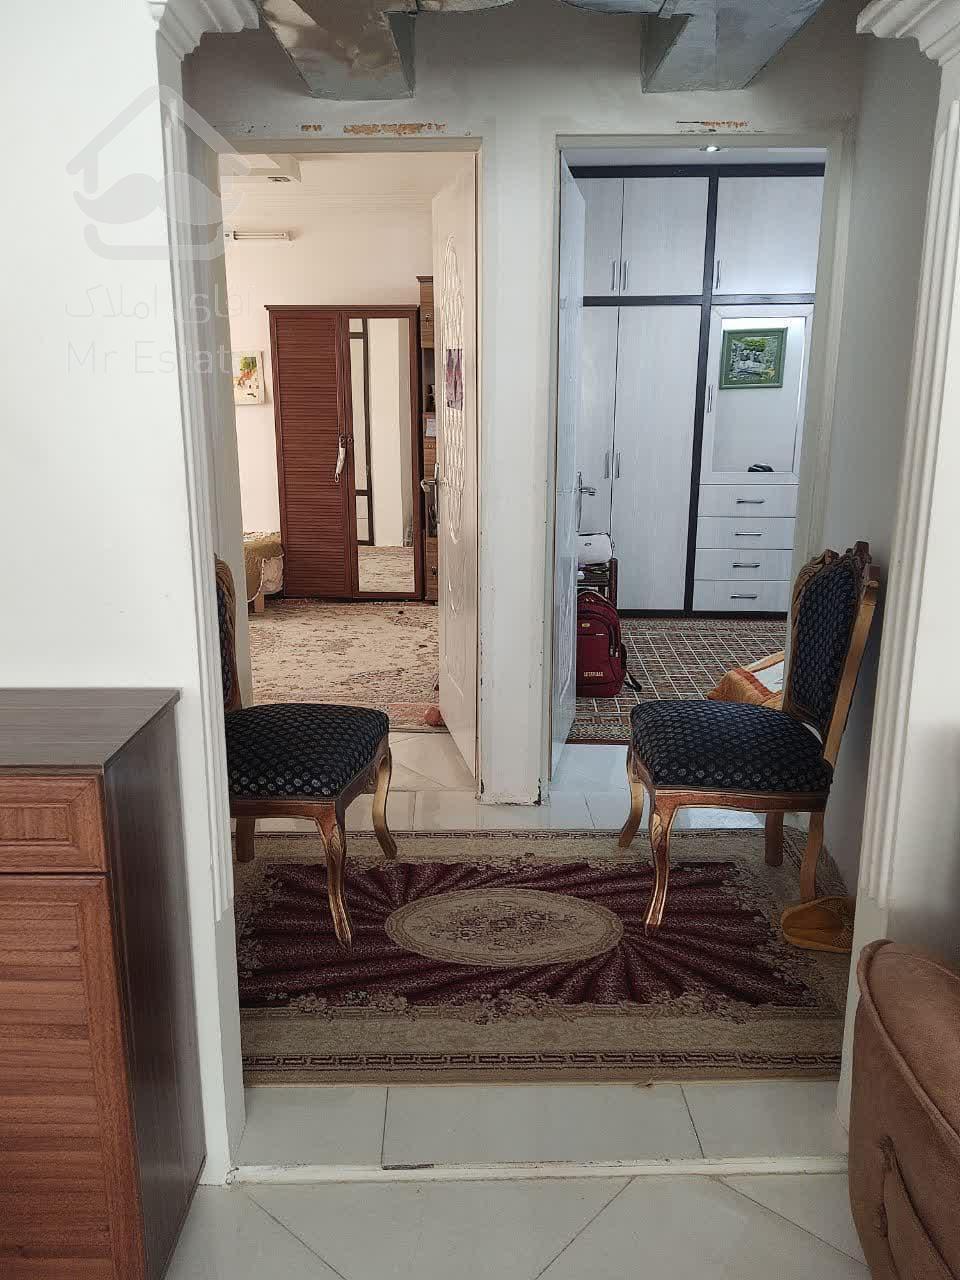 آپارتمان 125 متری تک واحد واقع در موسوی قوچانی 29